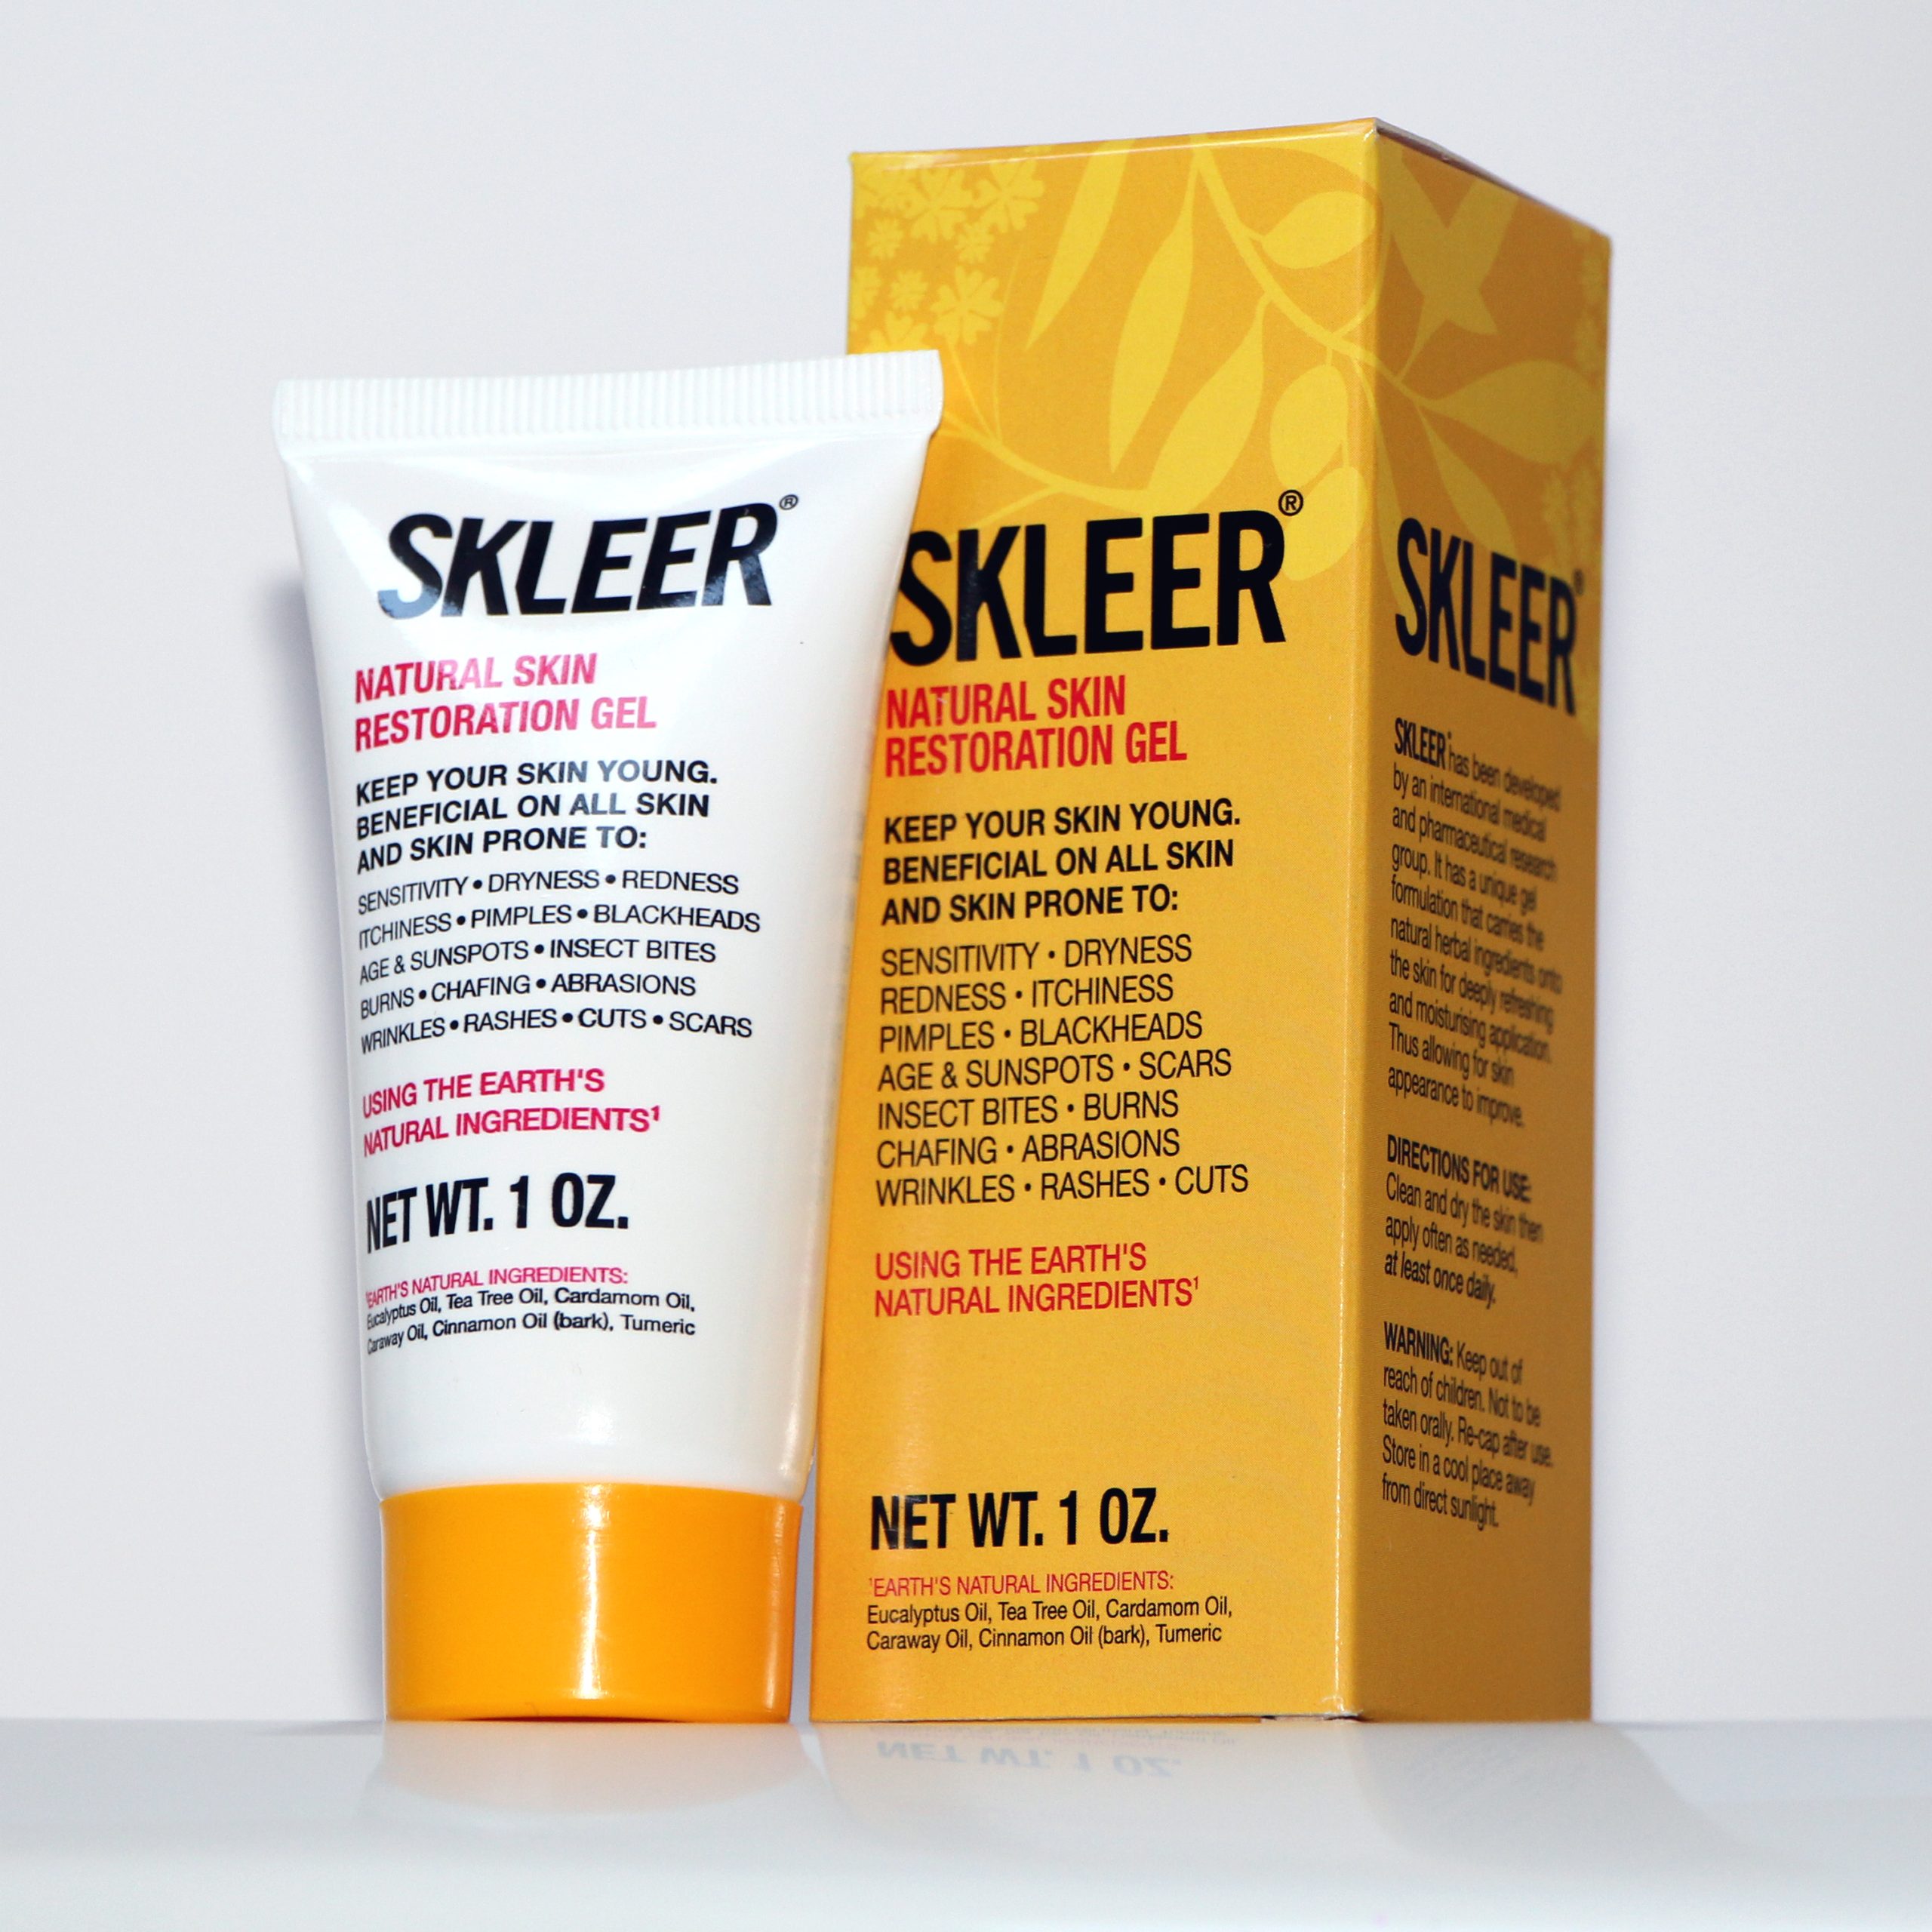 SKLEER – Natural Skin Restoration Gel – 30ml/1oz